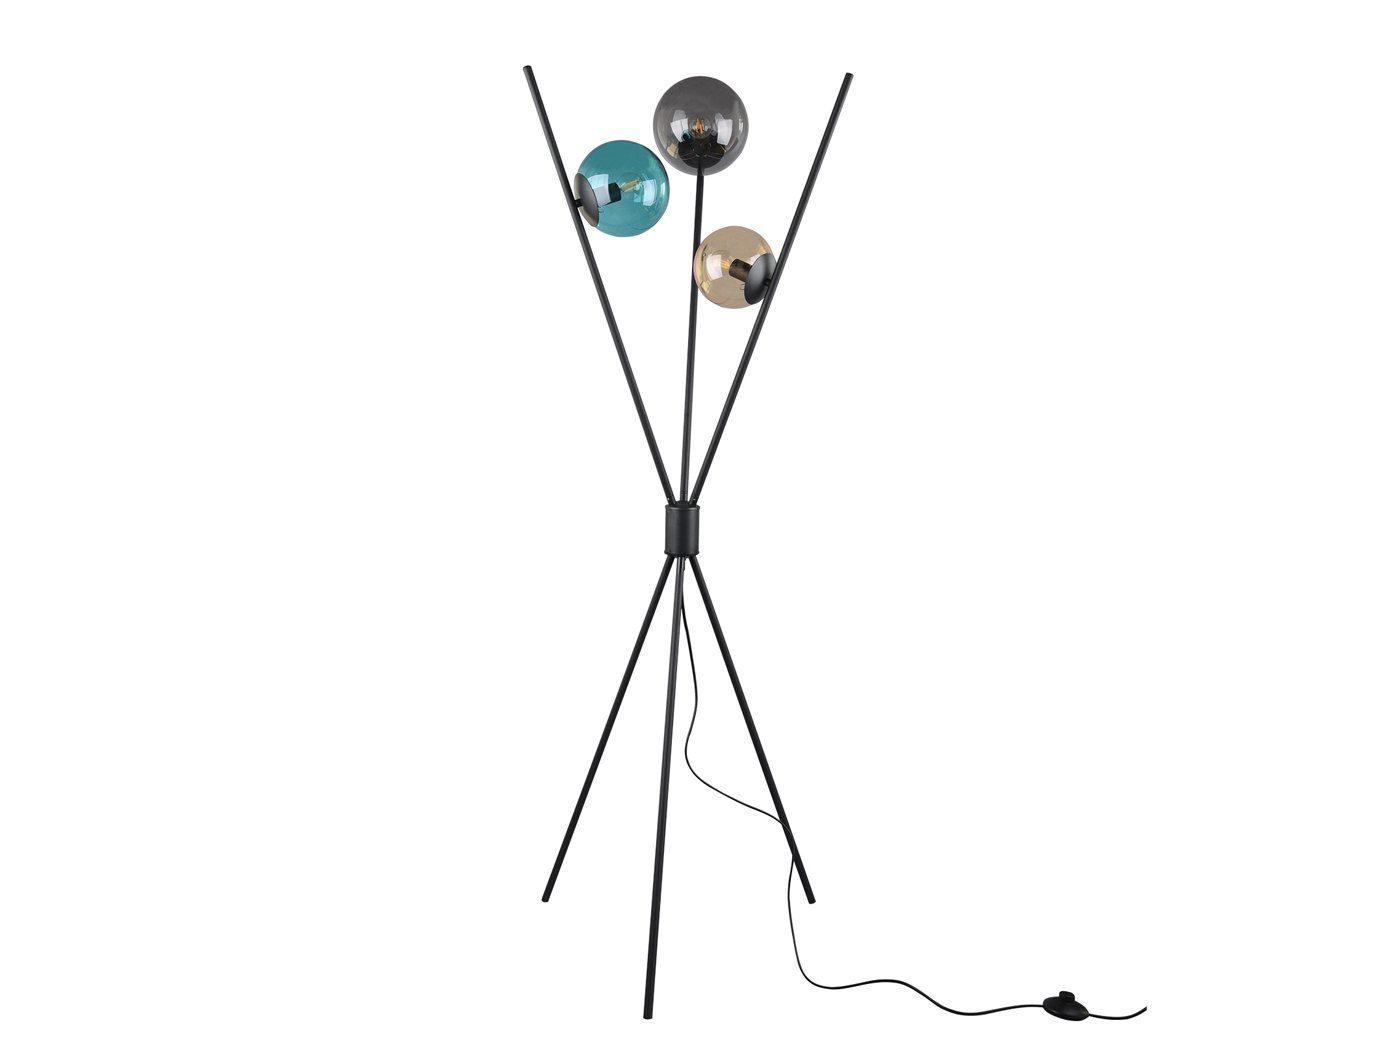 Dreibein, TRIO Stehlampe, Bunt-Schwarz Glas-kugel wechselbar, ausgefallene Lampe LED Bunt LED Warmweiß, 156cm Höhe Tripod moderne